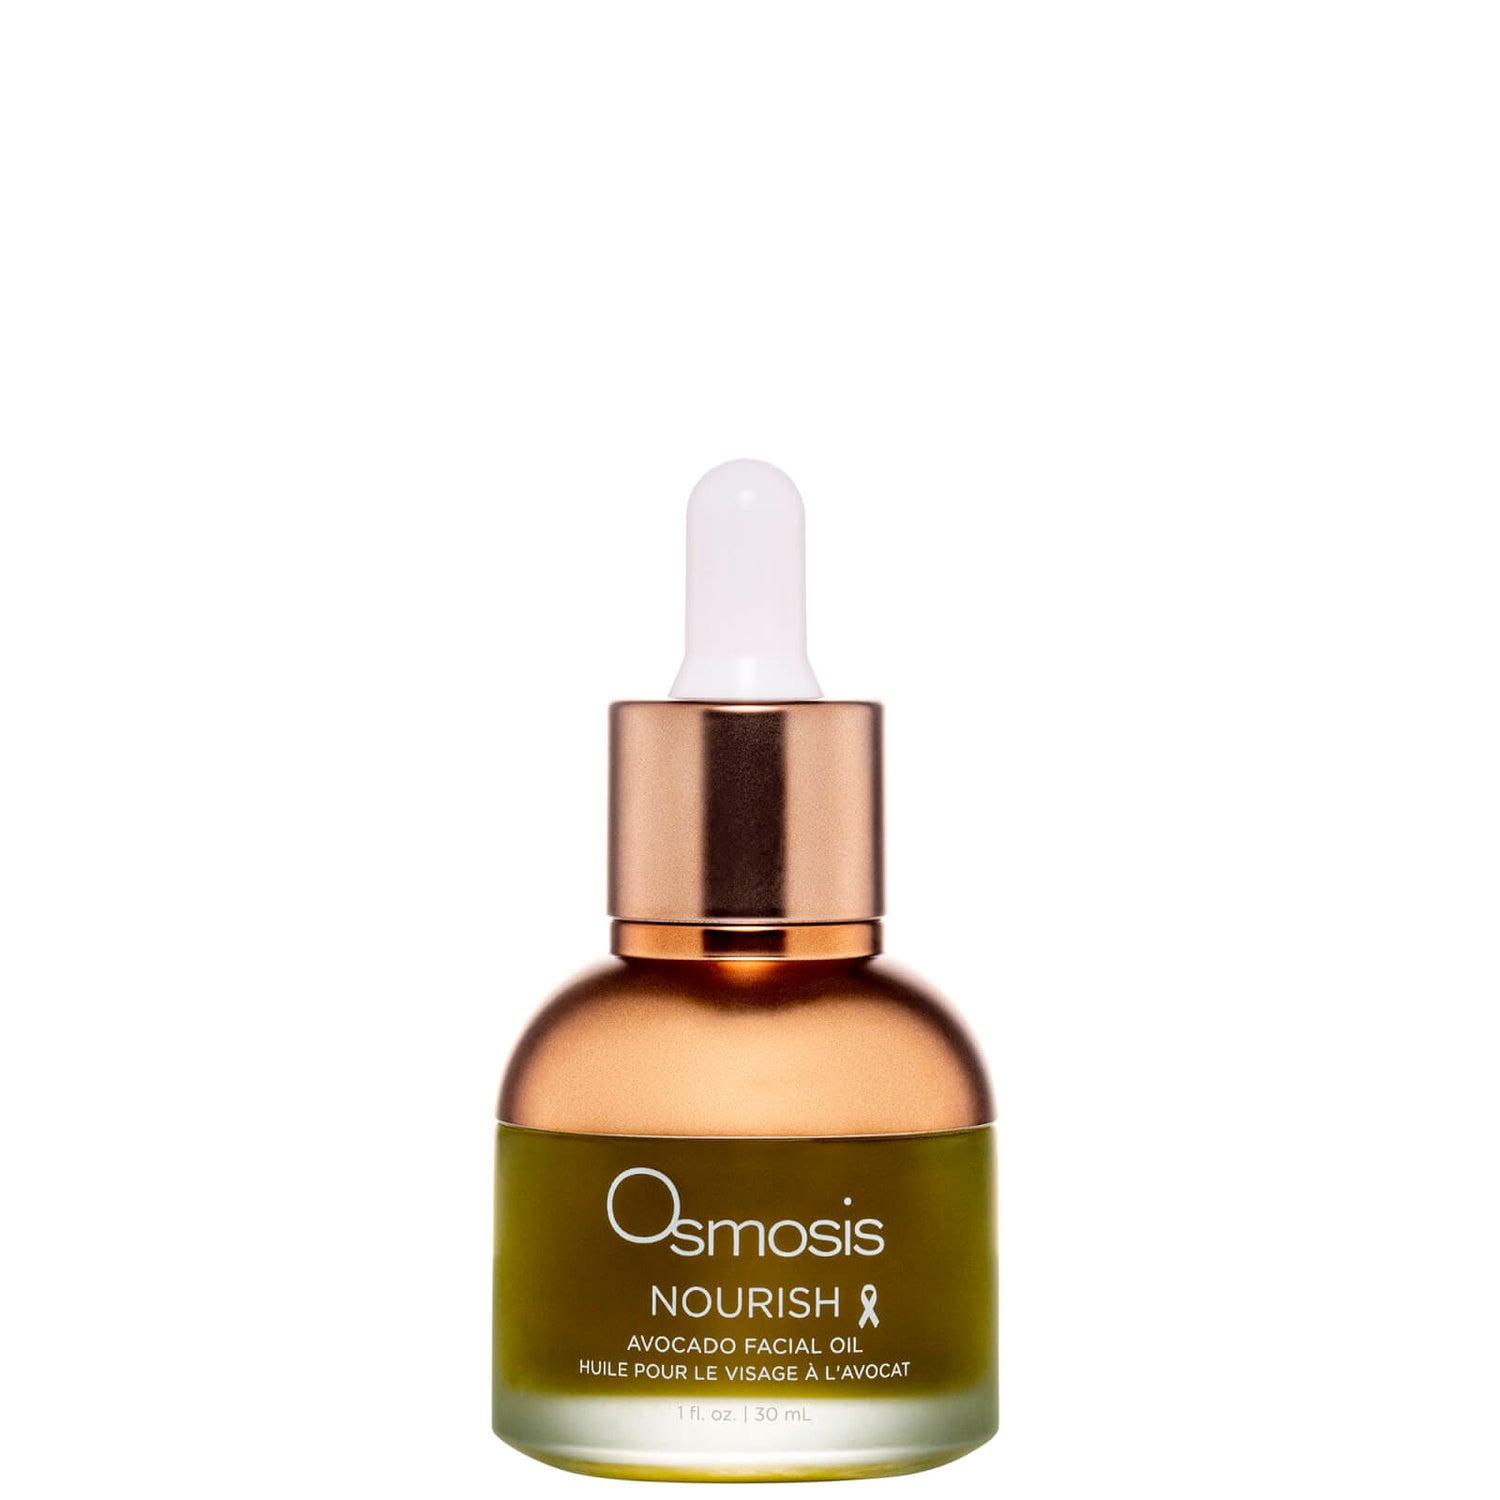 Osmosis +Beauty Nourish Avocado Facial Oil 30ml